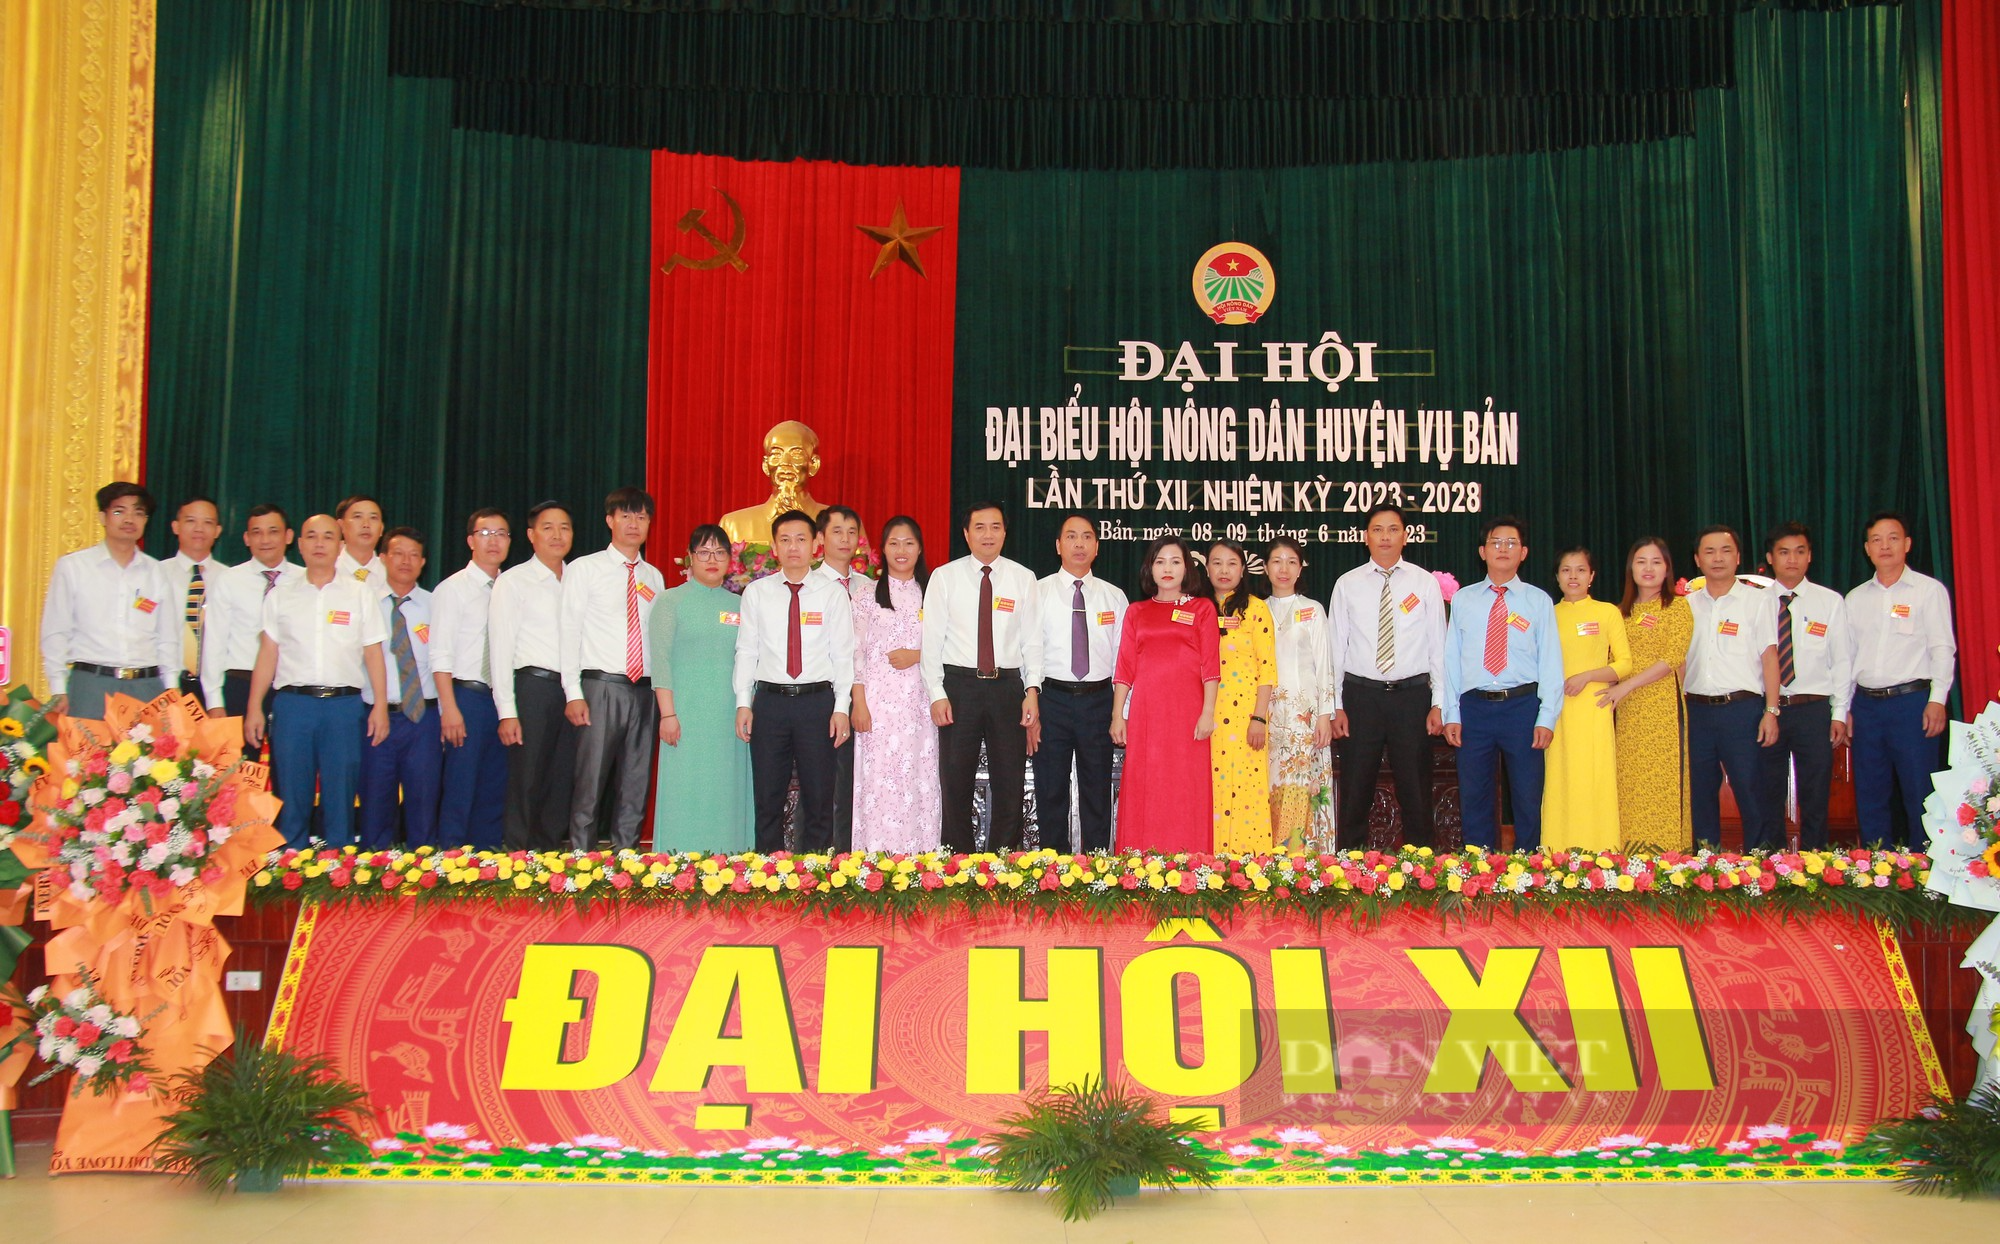 Đại hội Hội Nông dân huyện Vụ Bản, ông Hoàng Ngọc Nghị tái đắc cử chức Chủ tịch Hội Nông dân huyện - Ảnh 4.